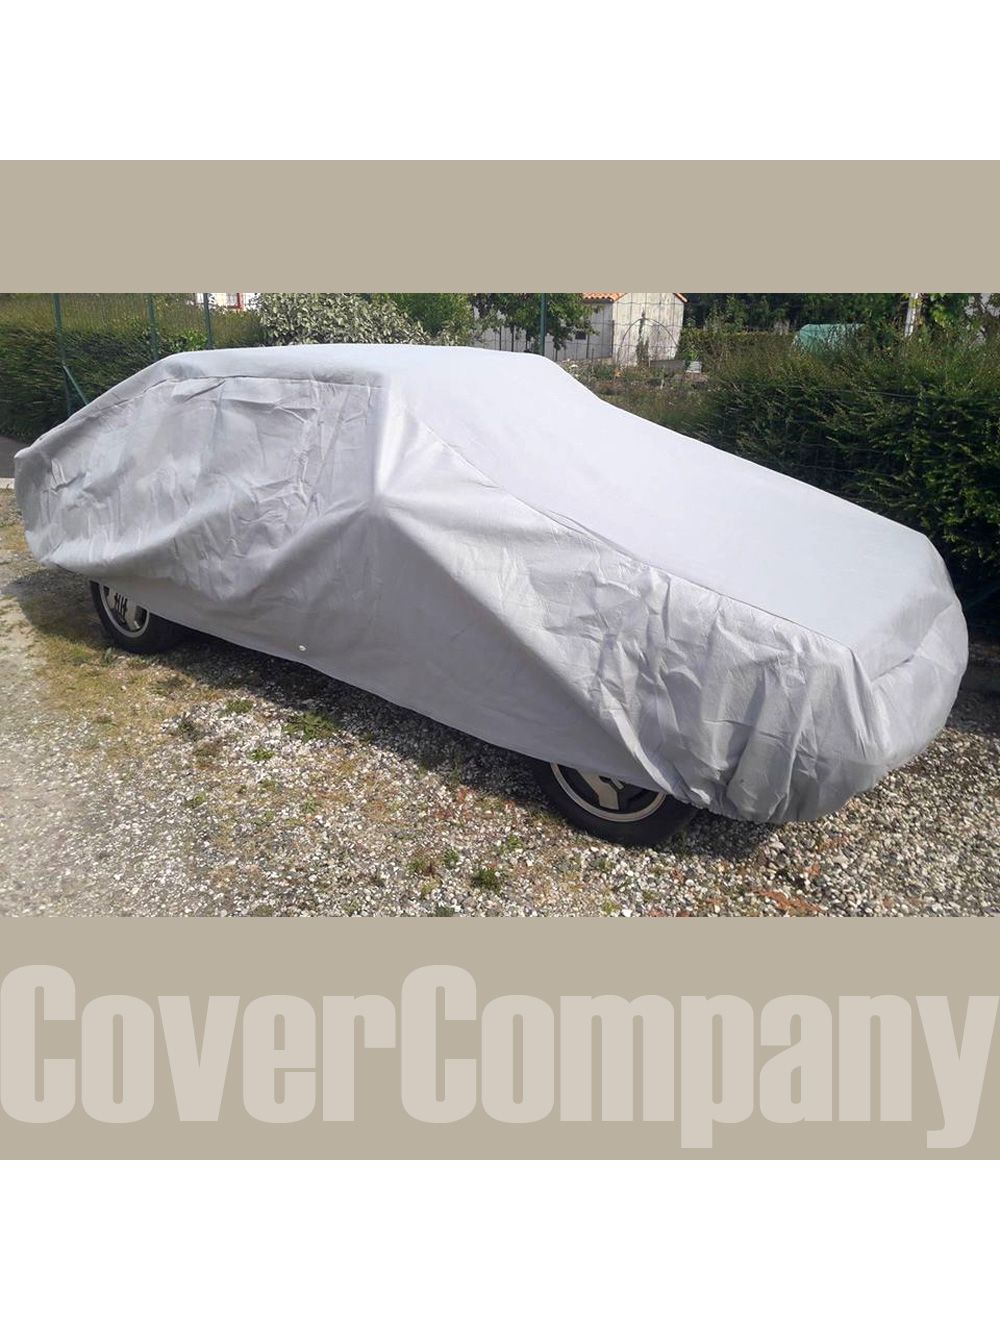 Standard Fit Rainproof Renault Car Cover - Outdoor Bronze Range